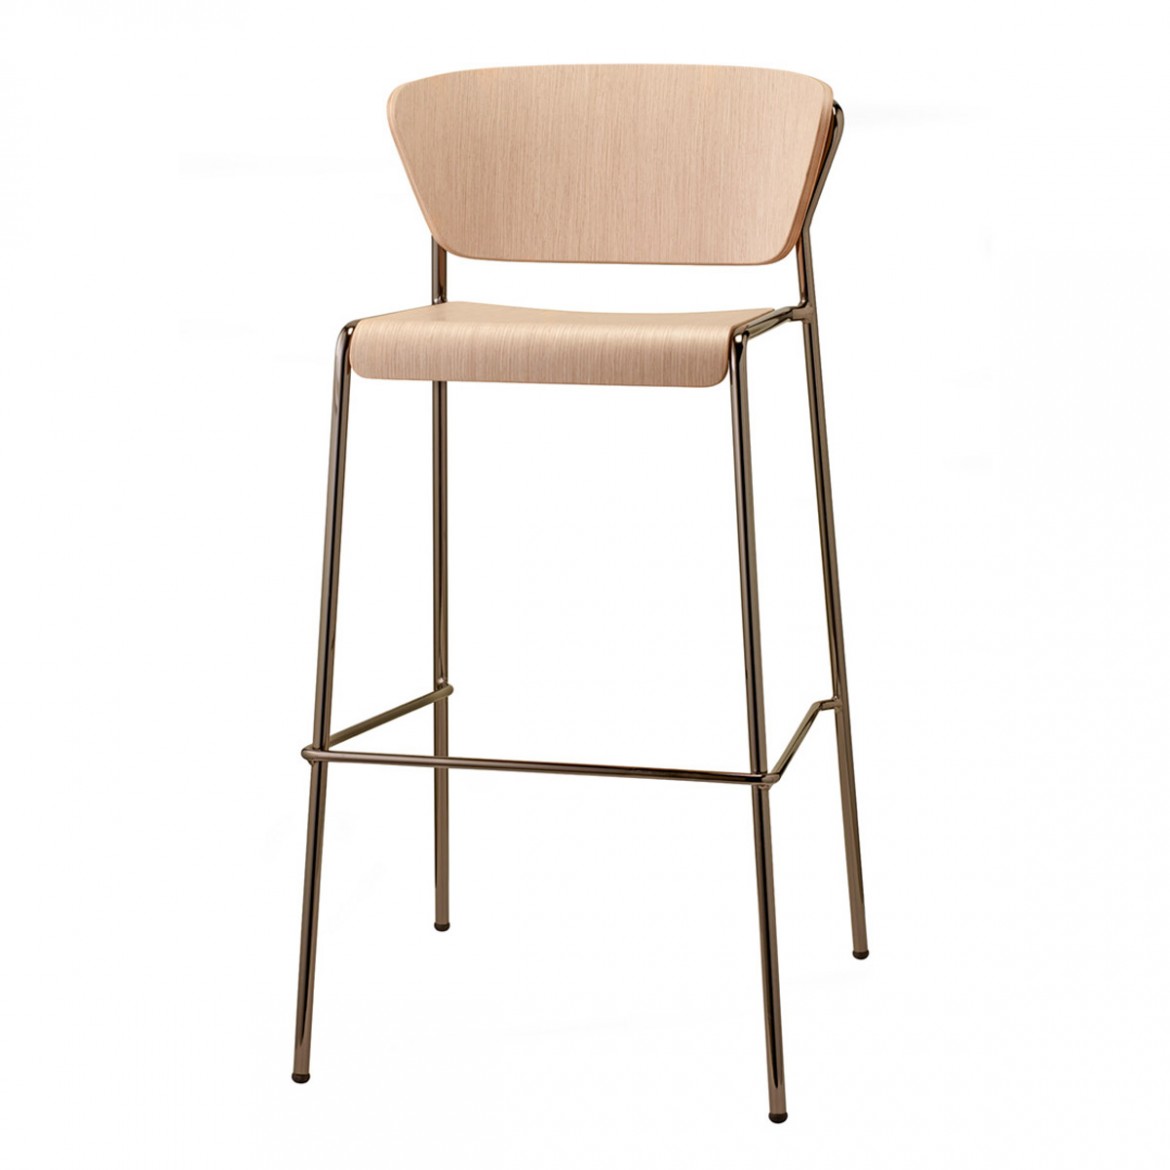 SCAB - Barová židle LISA WOOD vysoká - bělený buk/nikl